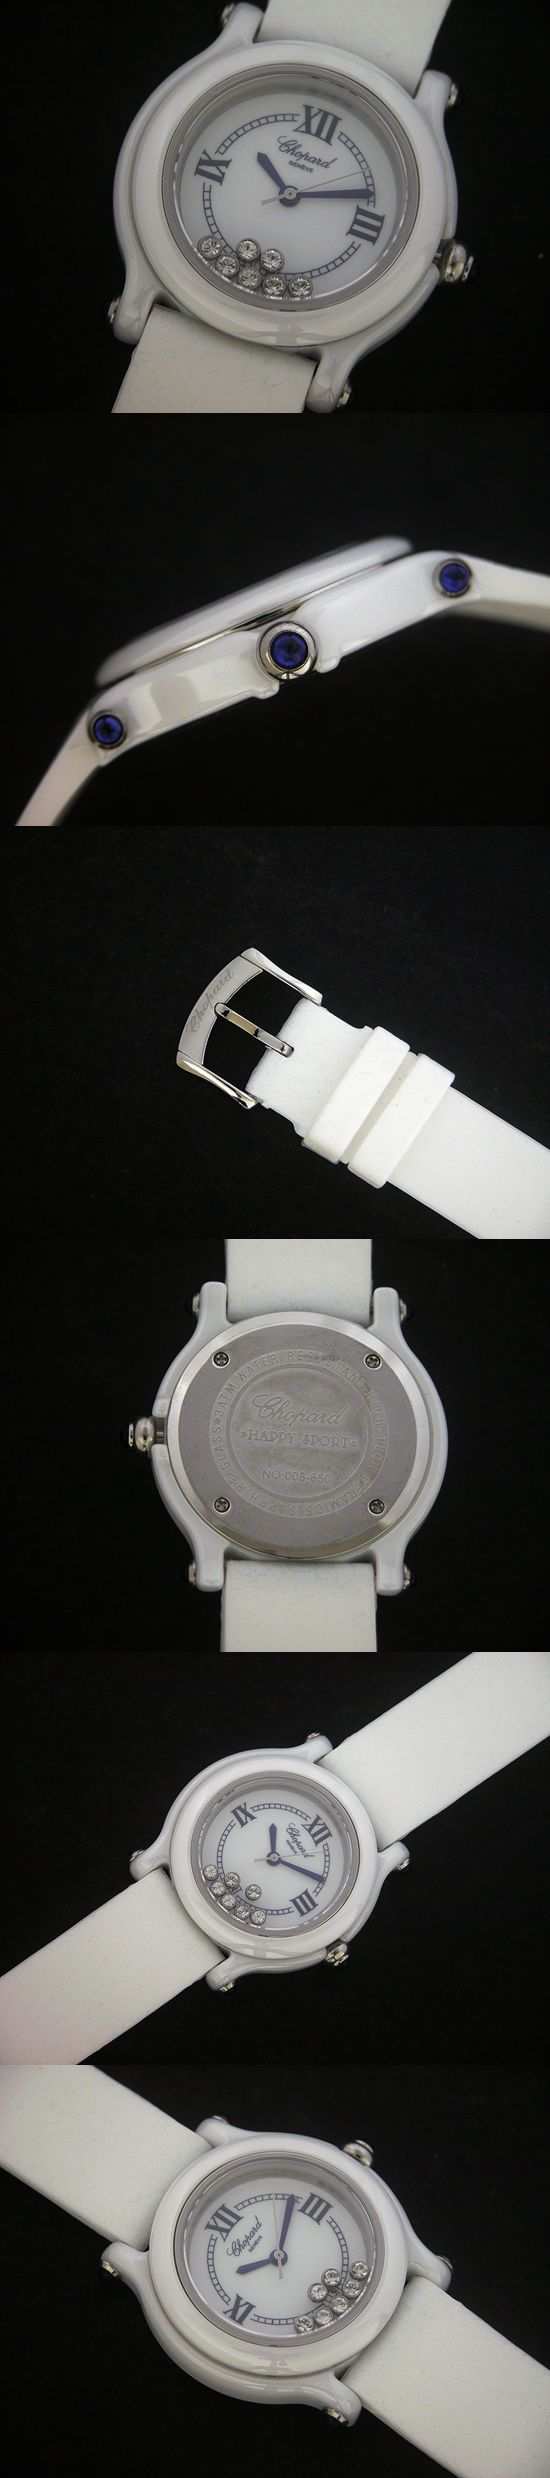 おしゃれなブランド時計がショパール-CHOPARD-ハッピースポーツ-27/8245-23  女性用腕時計を提供します.